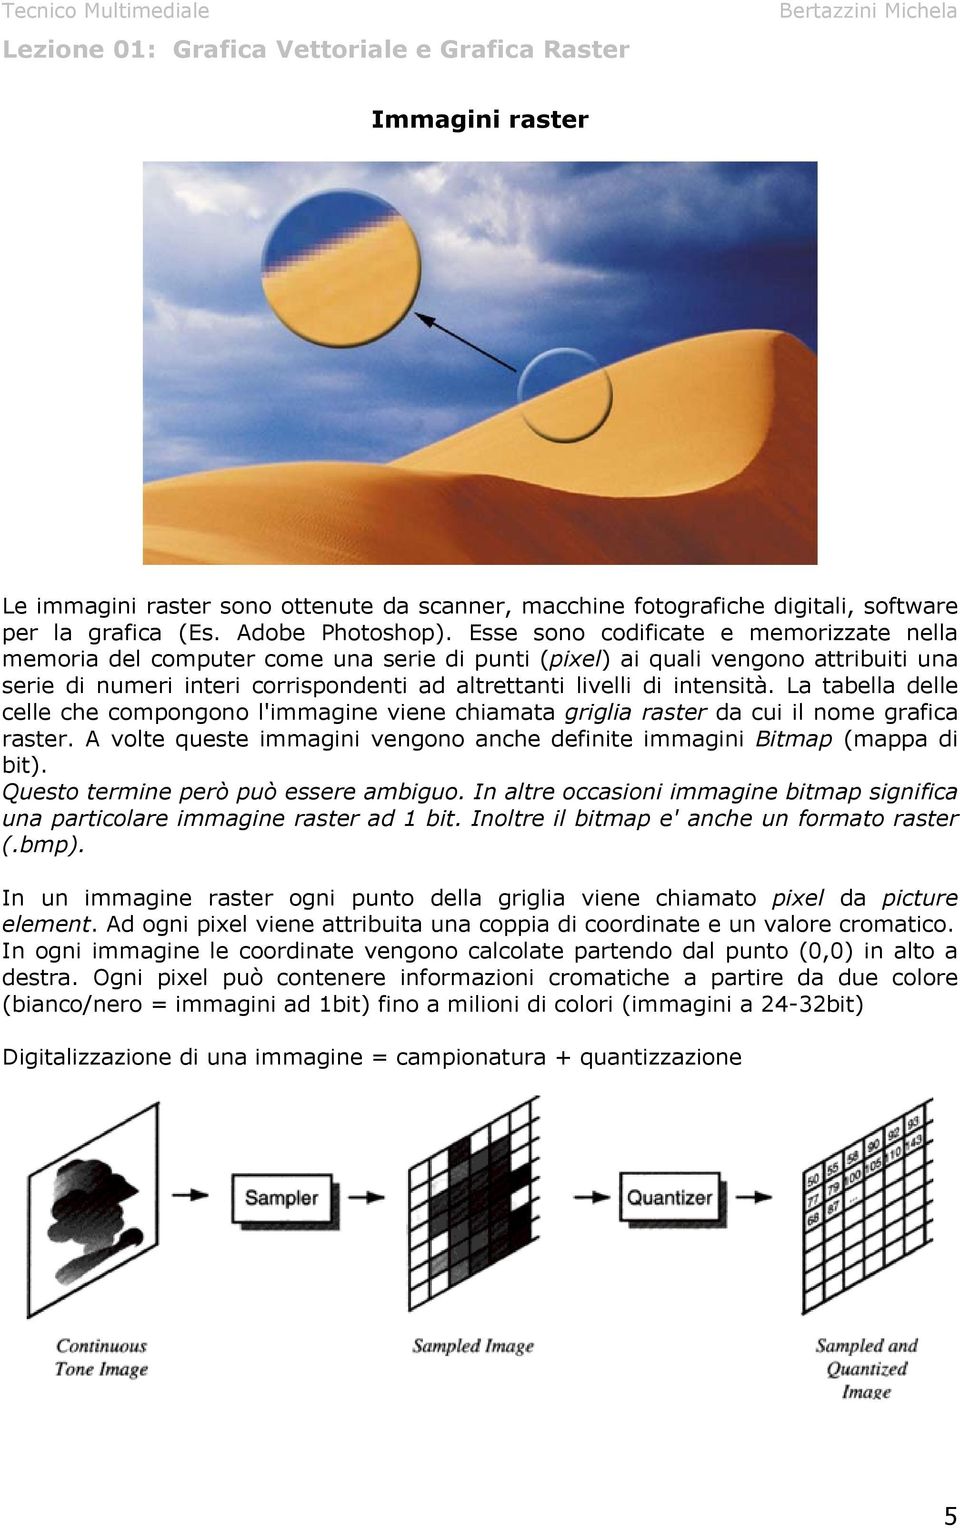 La tabella delle celle che compongono l'immagine viene chiamata griglia raster da cui il nome grafica raster. A volte queste immagini vengono anche definite immagini Bitmap (mappa di bit).